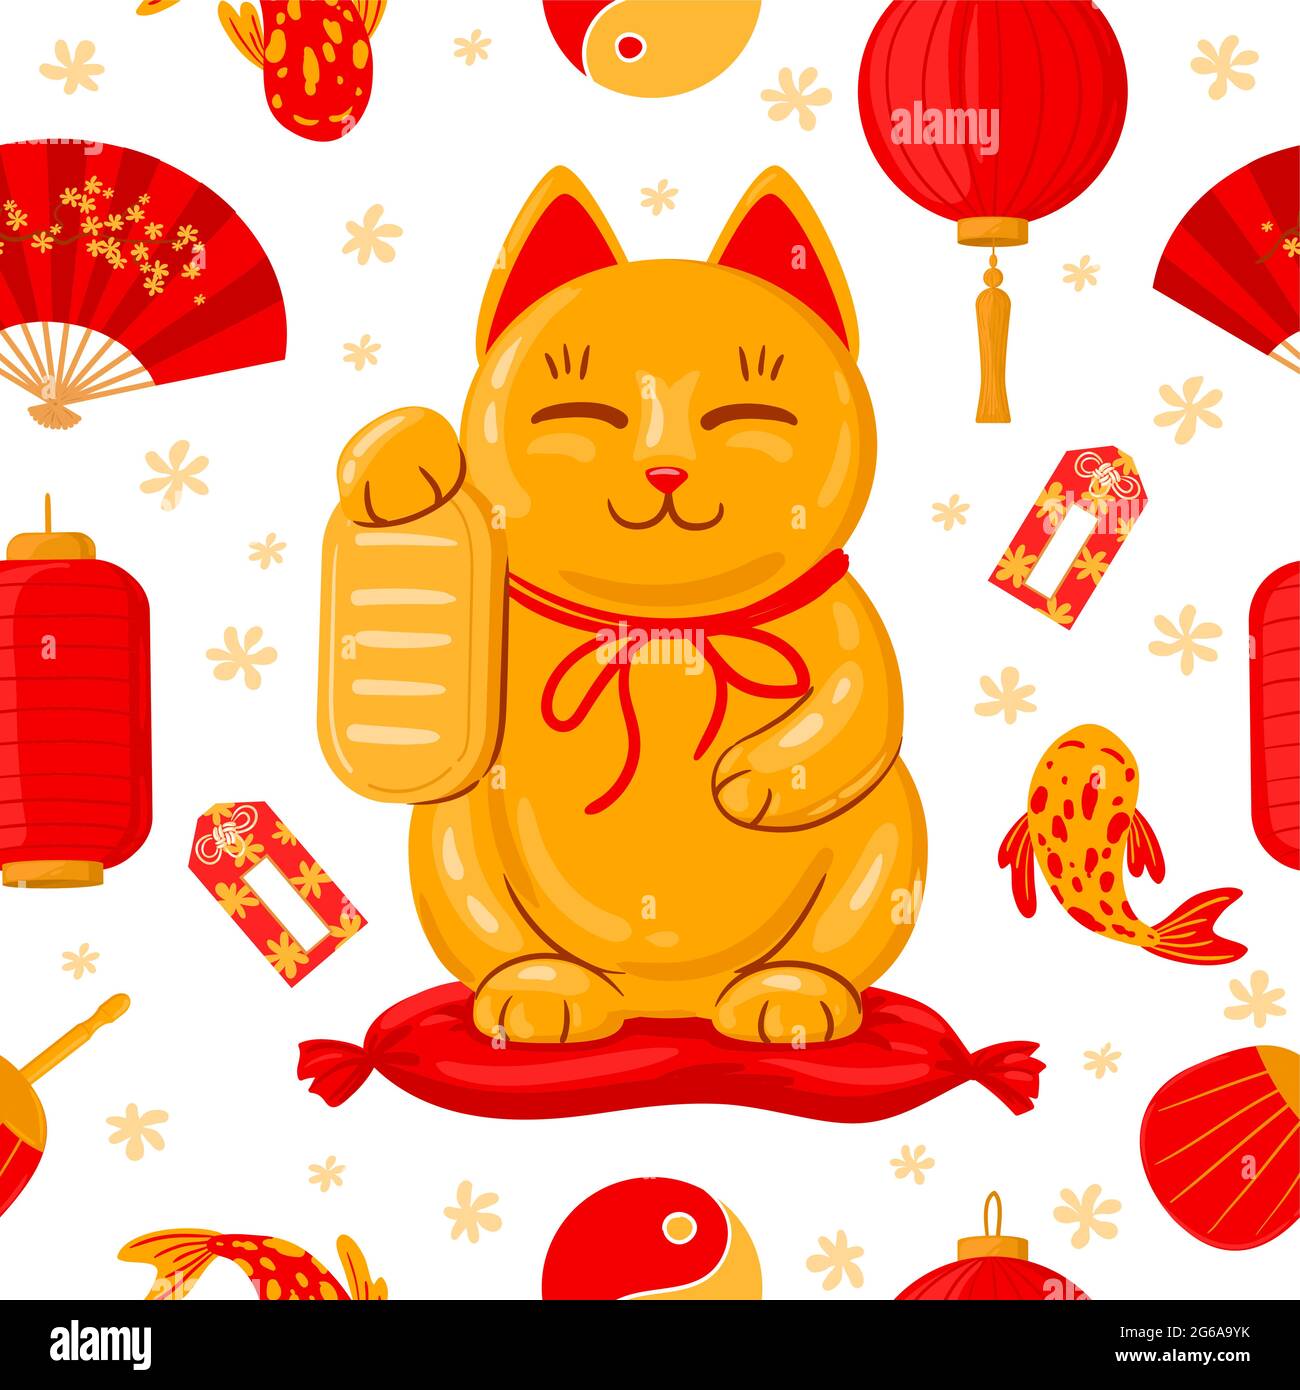 Gato de la suerte japonés, gato japonés maneki neko, png